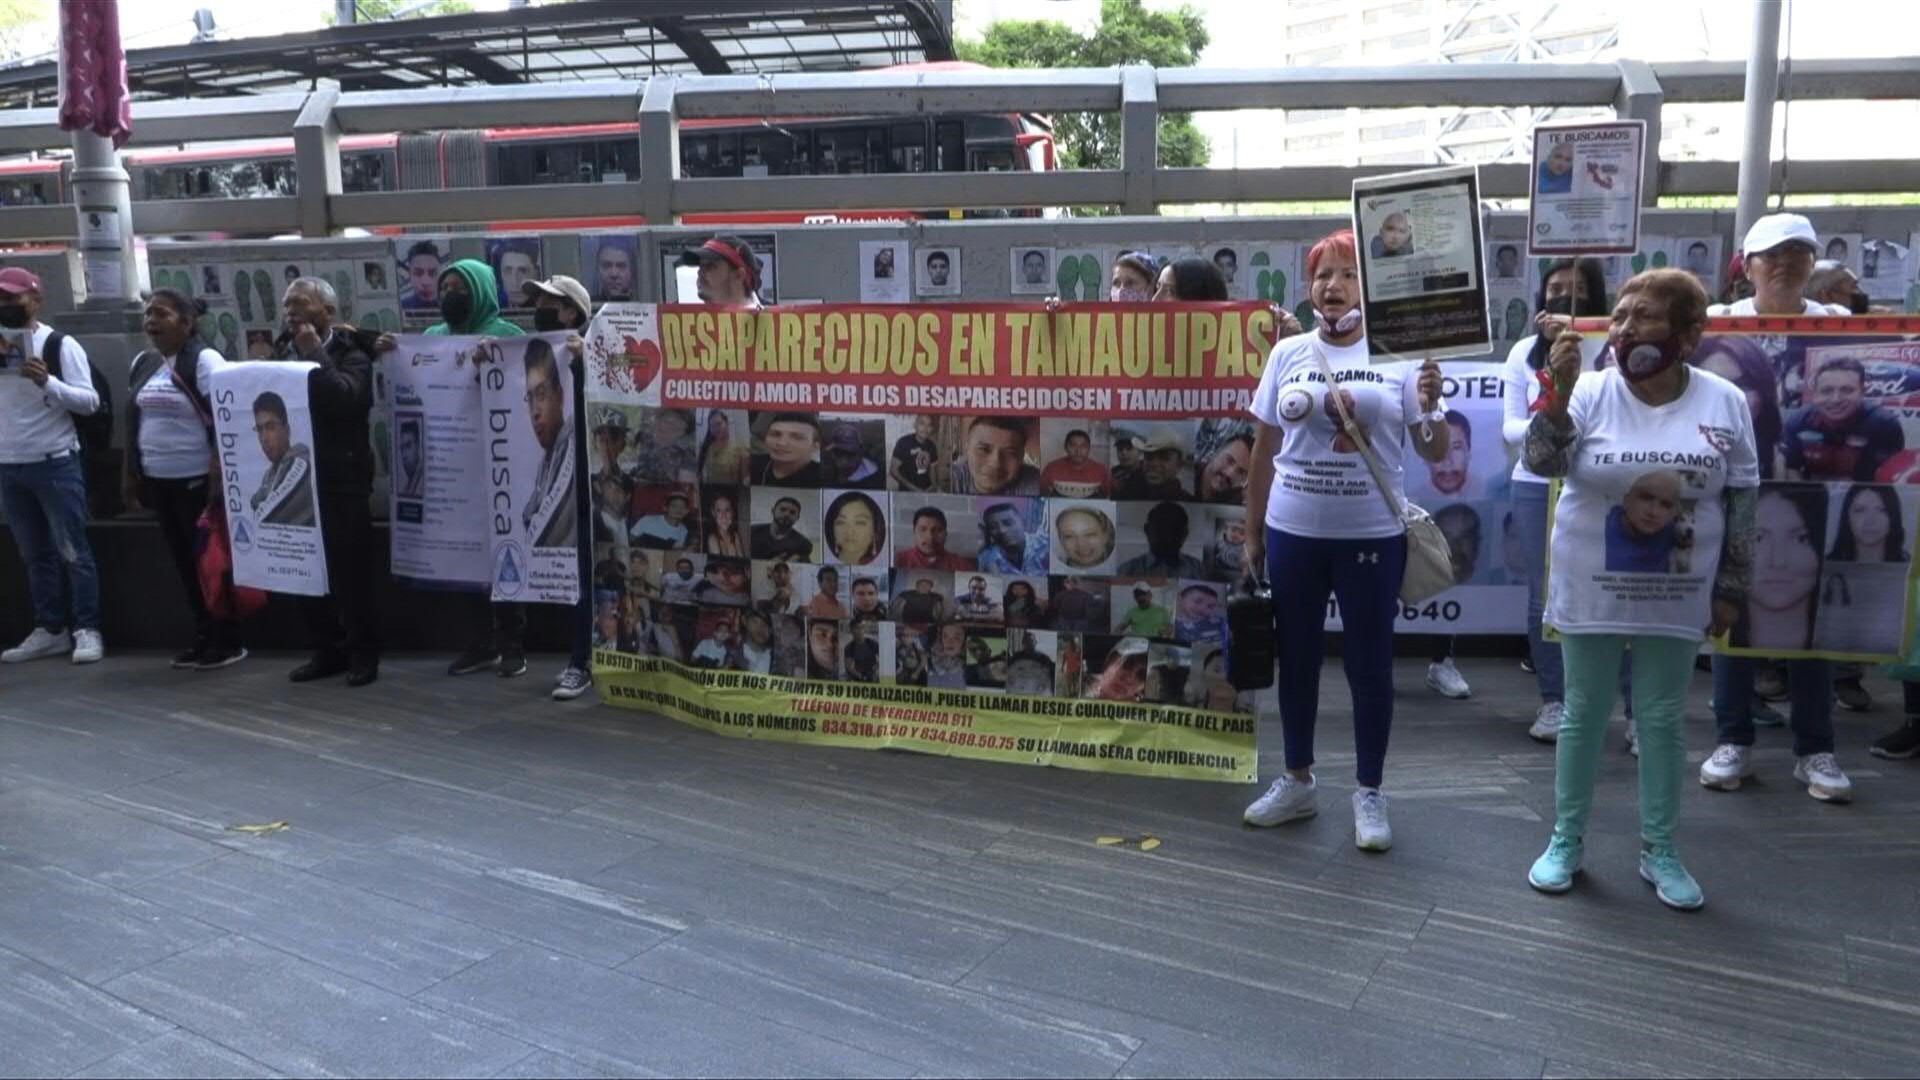 Familiares de desaparecidos en México marcharon el martes denunciando ineficacia de las autoridades para hallar a sus seres queridos, durante la conmemoración del día internacional de las víctimas de desaparición forzada, un crimen que impacta seriamente al país.